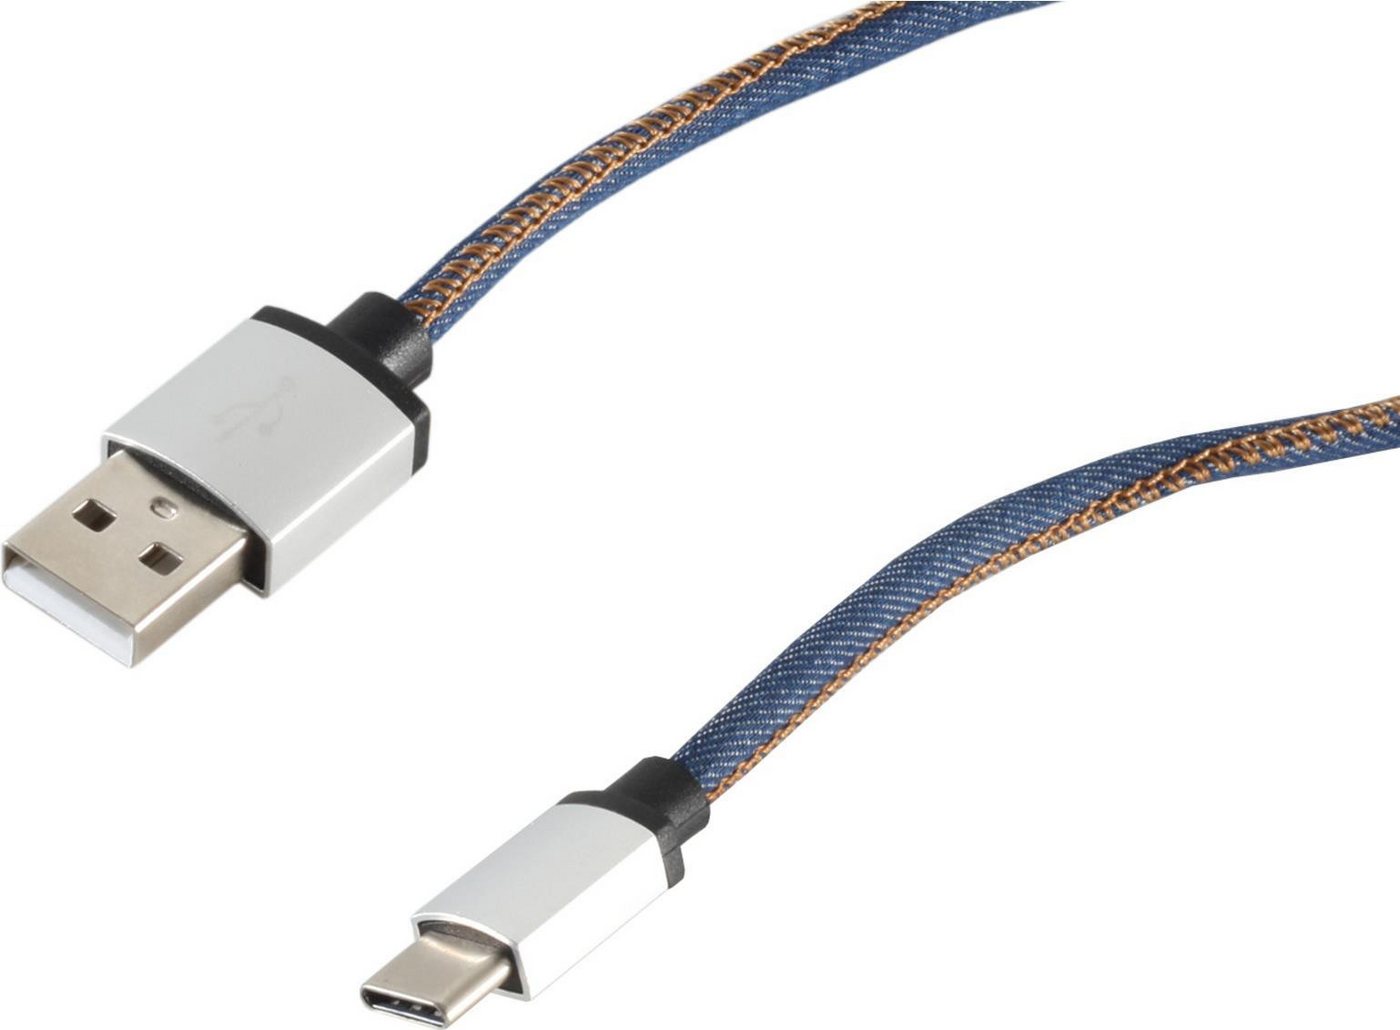 S-Conn S-CONN 14-50030 2m USB A USB C Männlich Männlich Blau USB Kabel (14... USB-Kabel von S-Conn